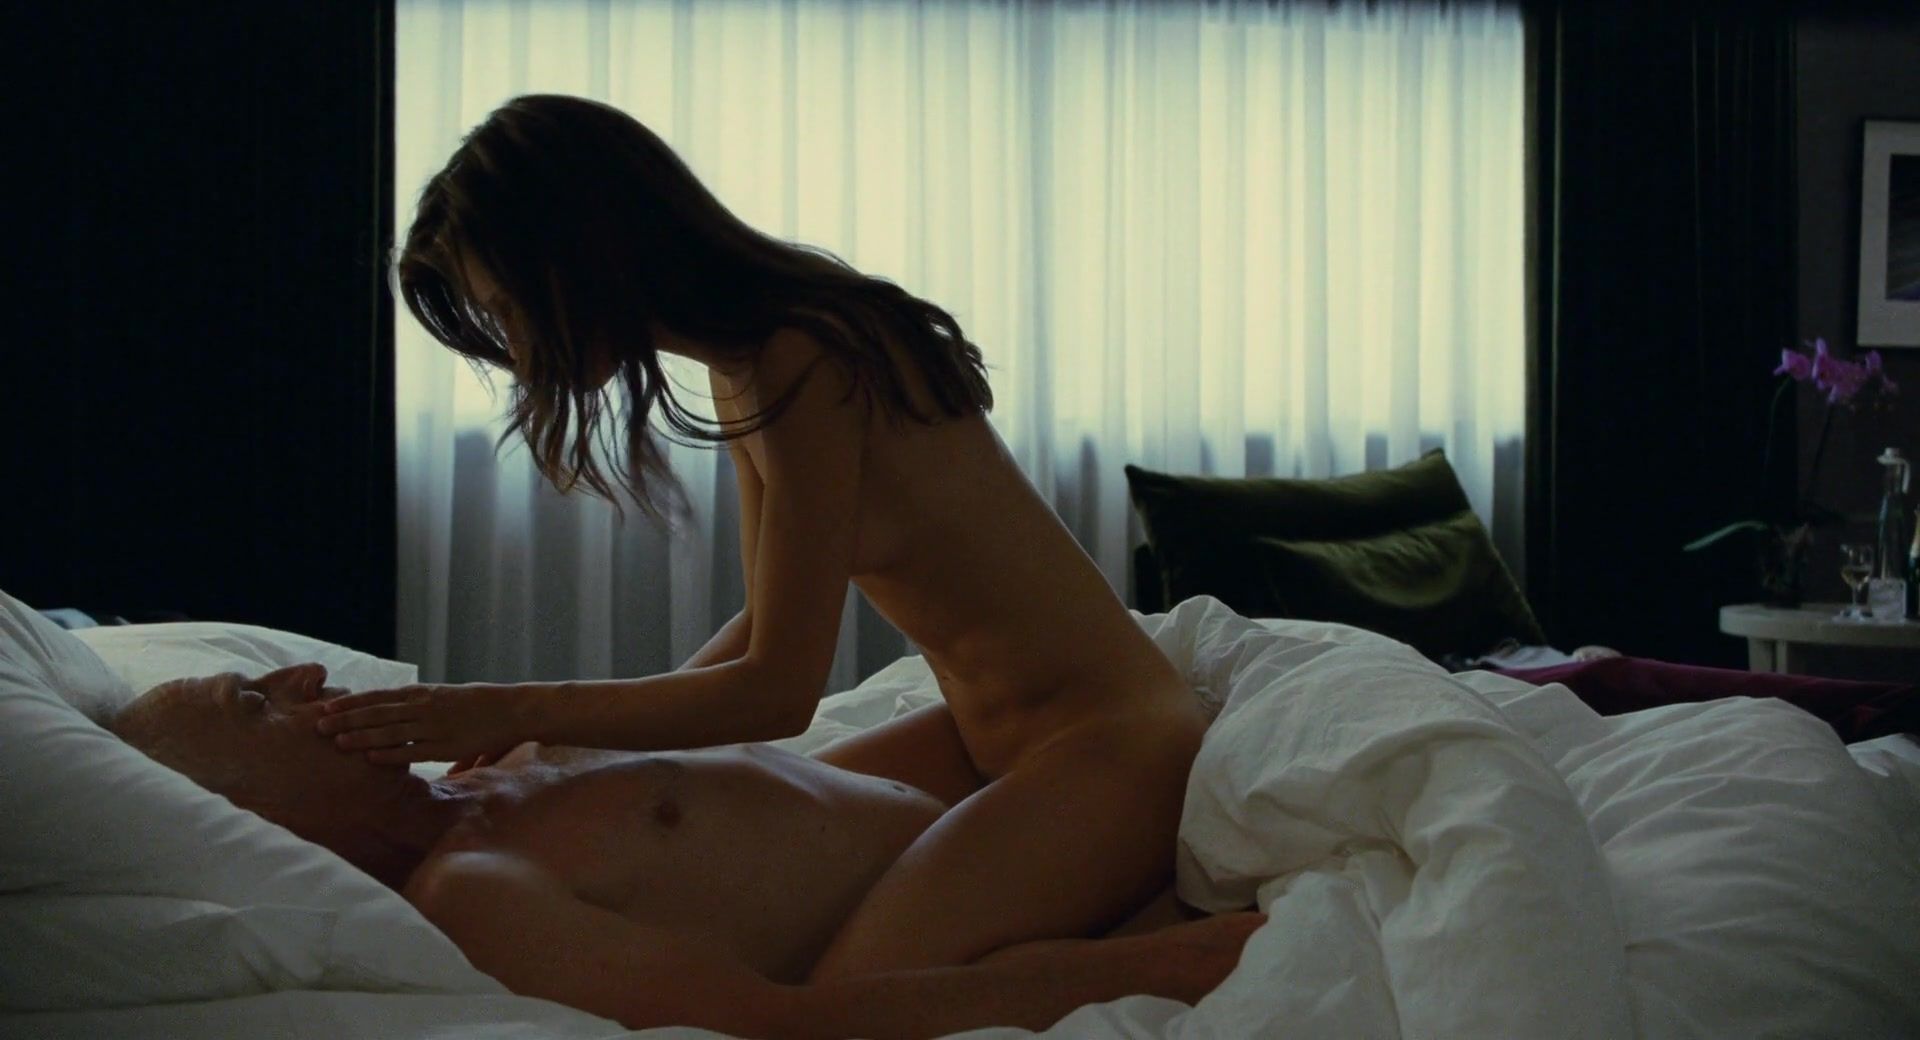 Women Celebs nude and Sex video - Marine Vacth nude - Jeune & jolie (2013) JustJared